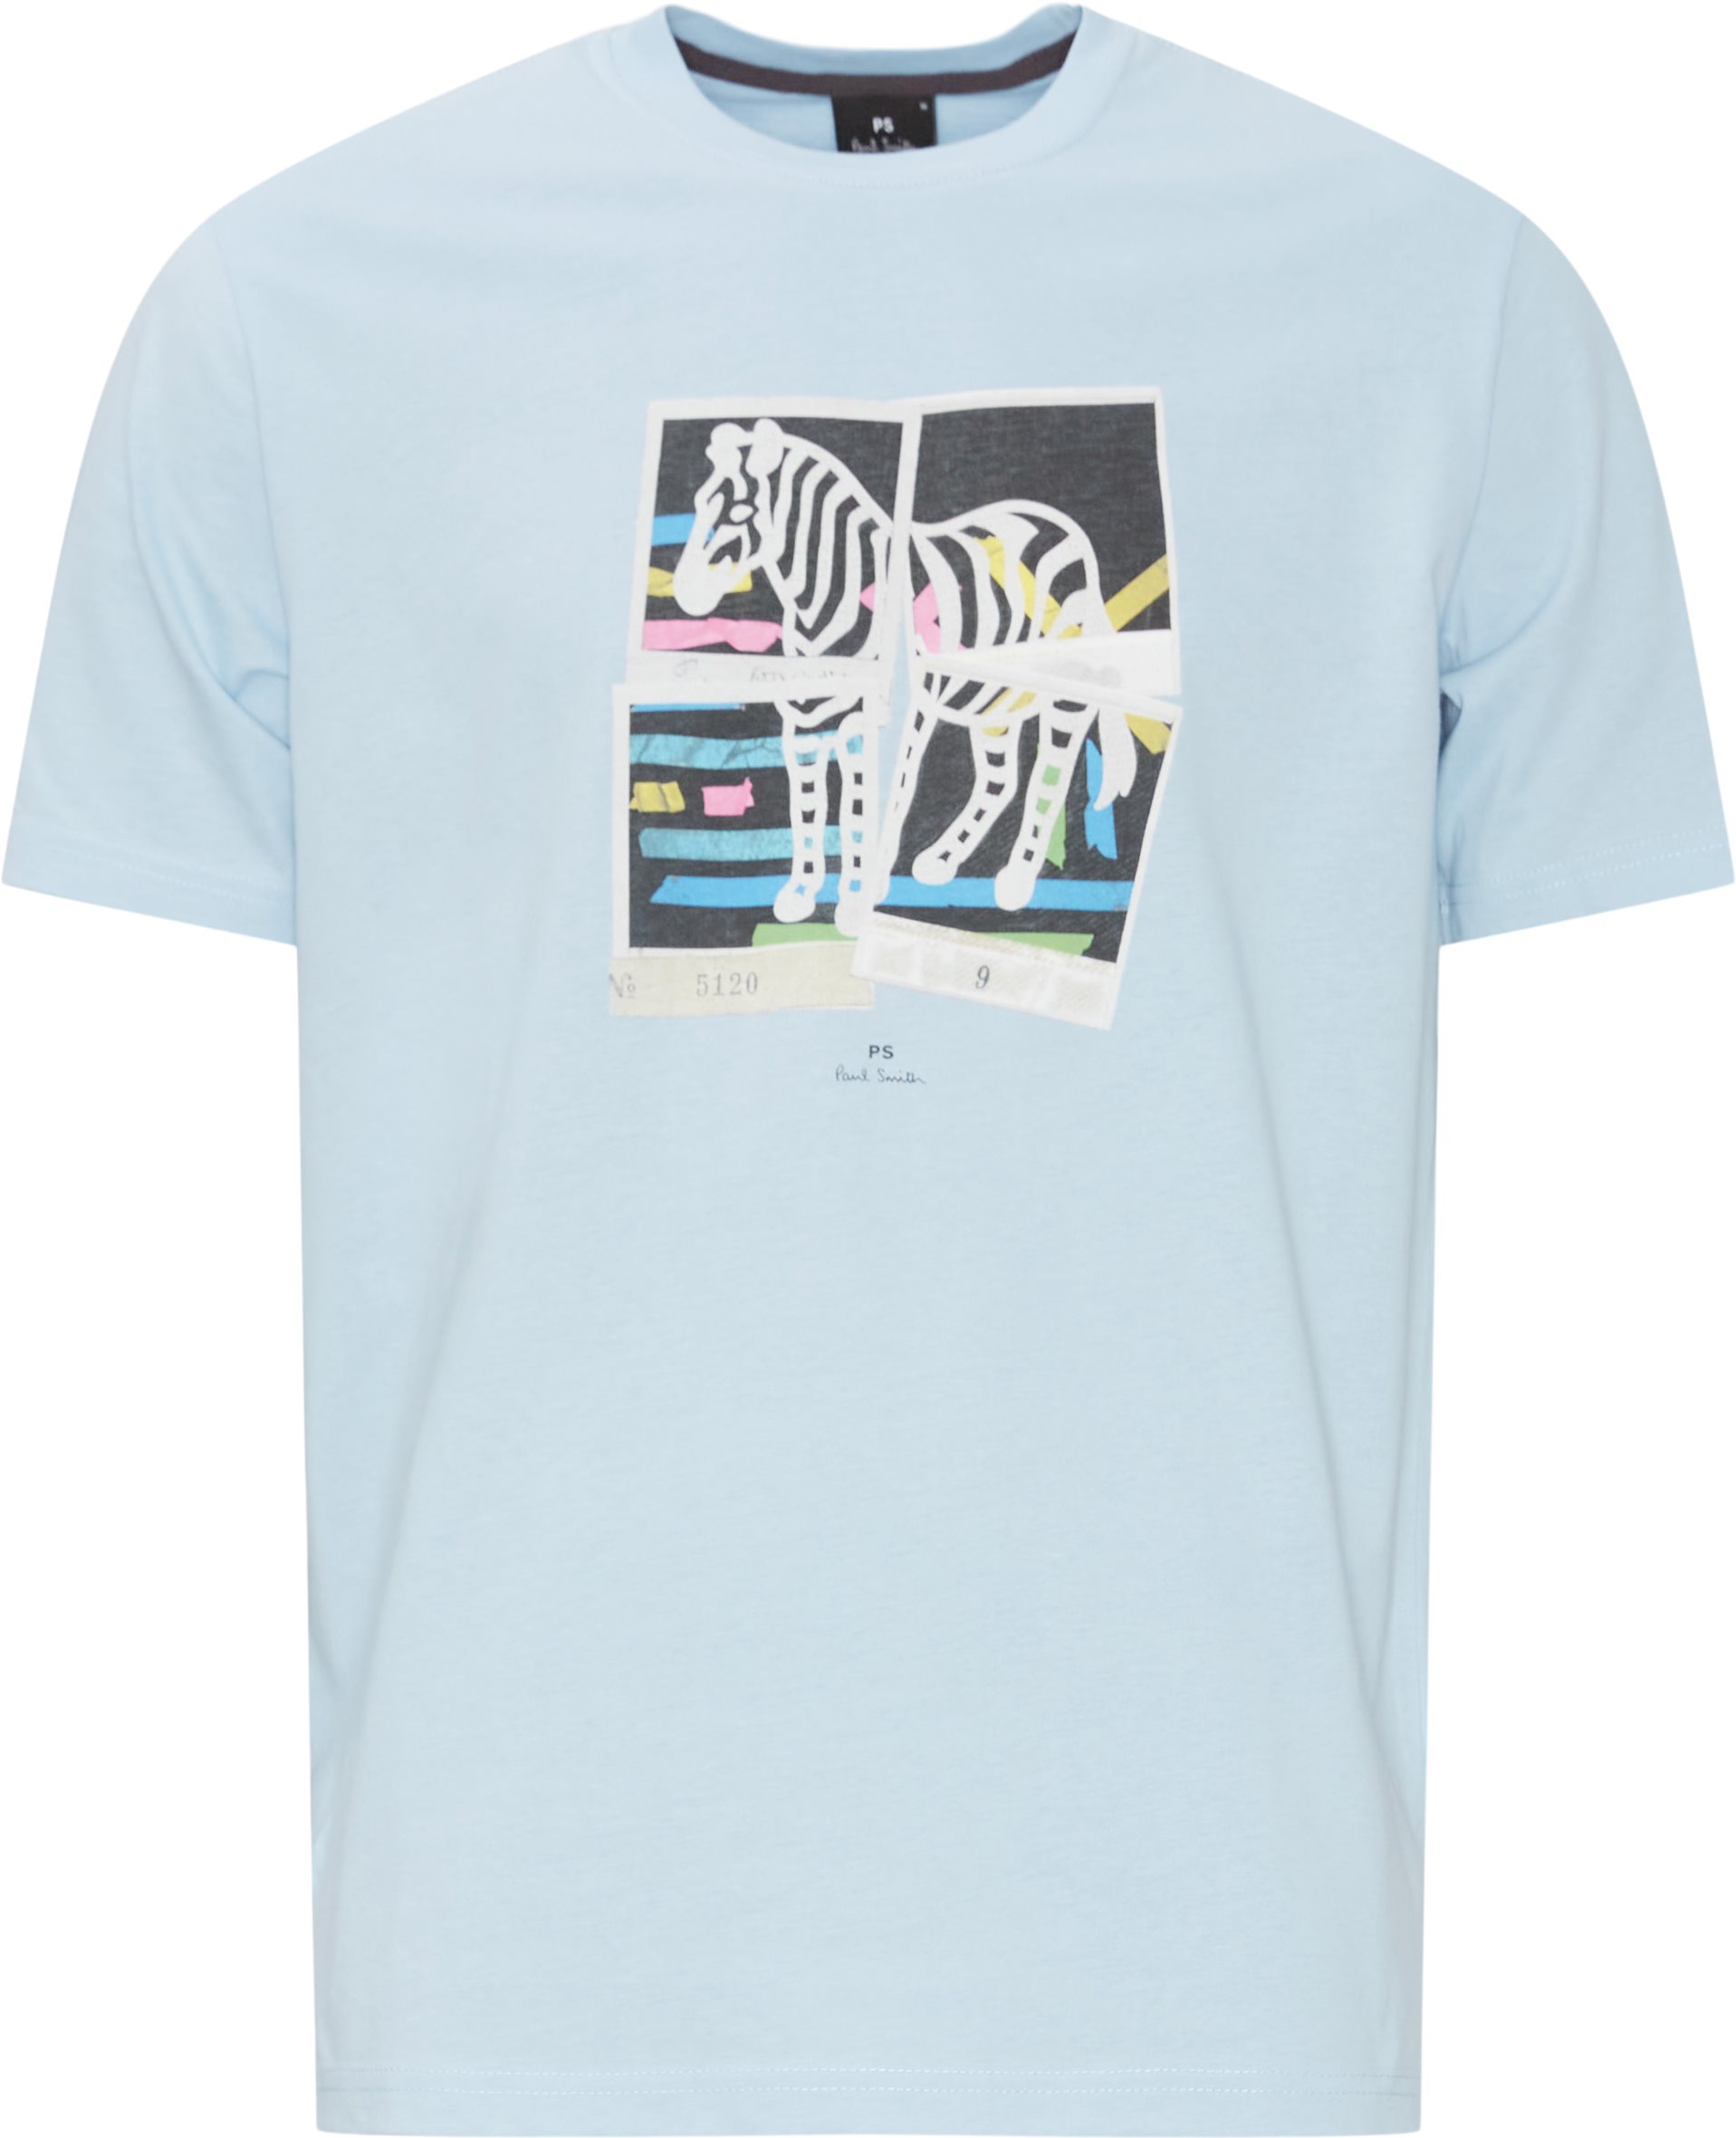 Window Tee - T-shirts - Regular fit - Blå